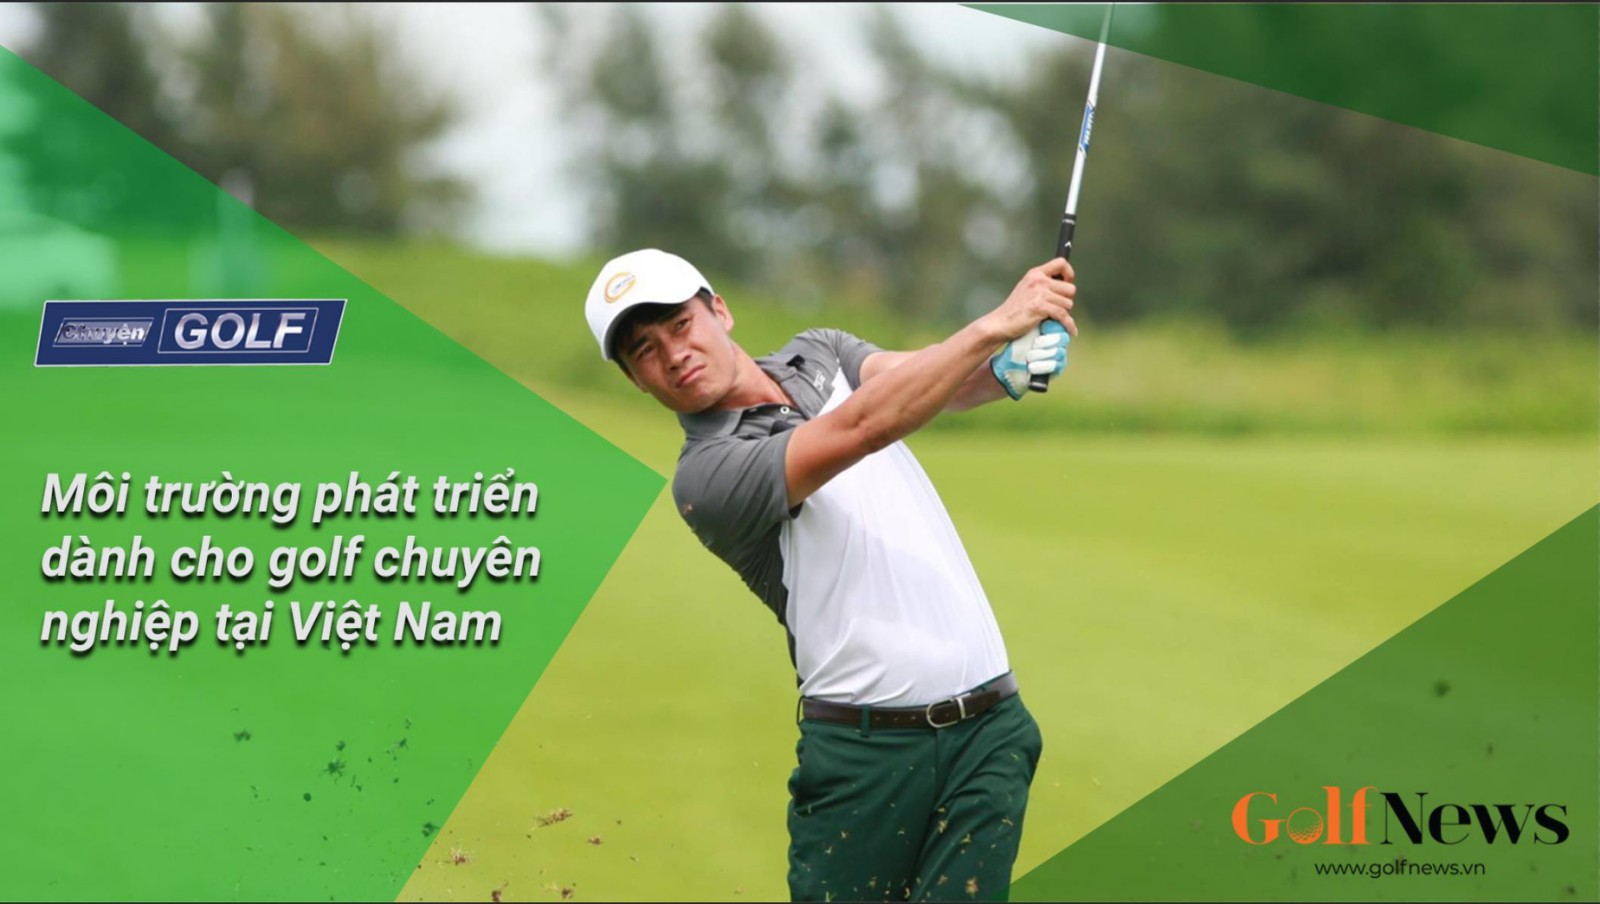 Chuyện golf 88: Môi trường phát triển dành cho golf chuyên nghiệp tại Việt Nam